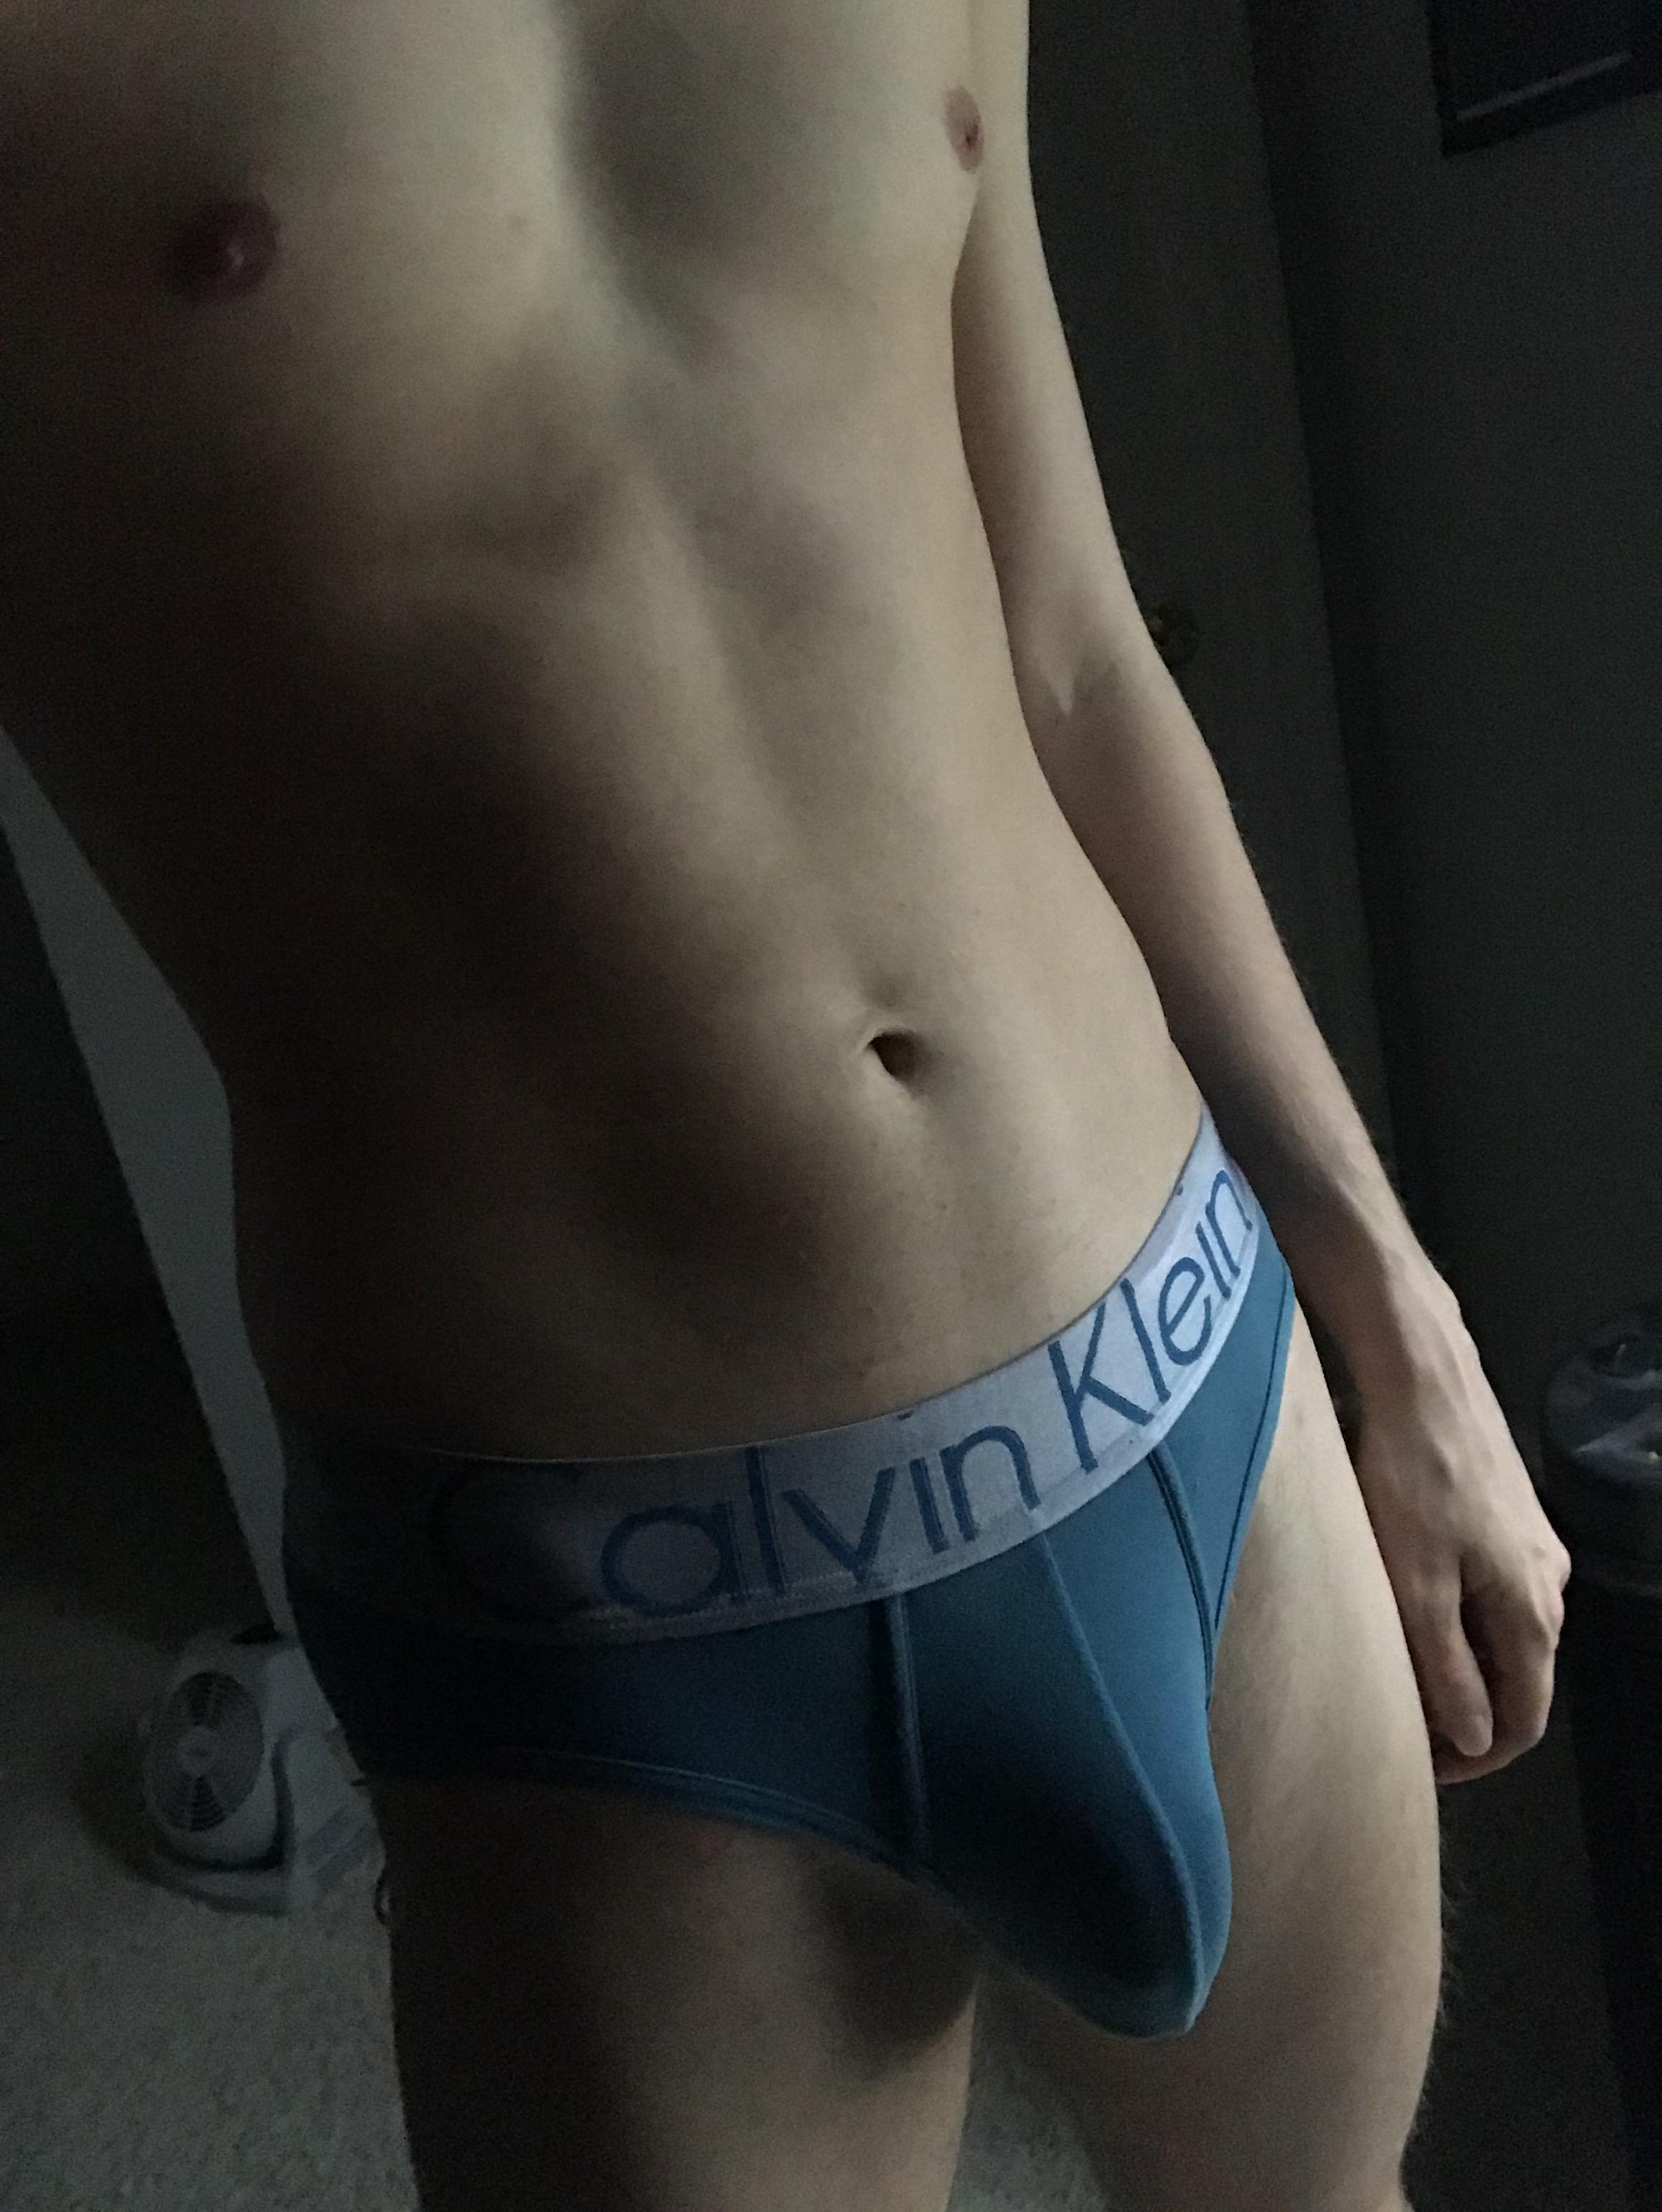 Love my CK underwear